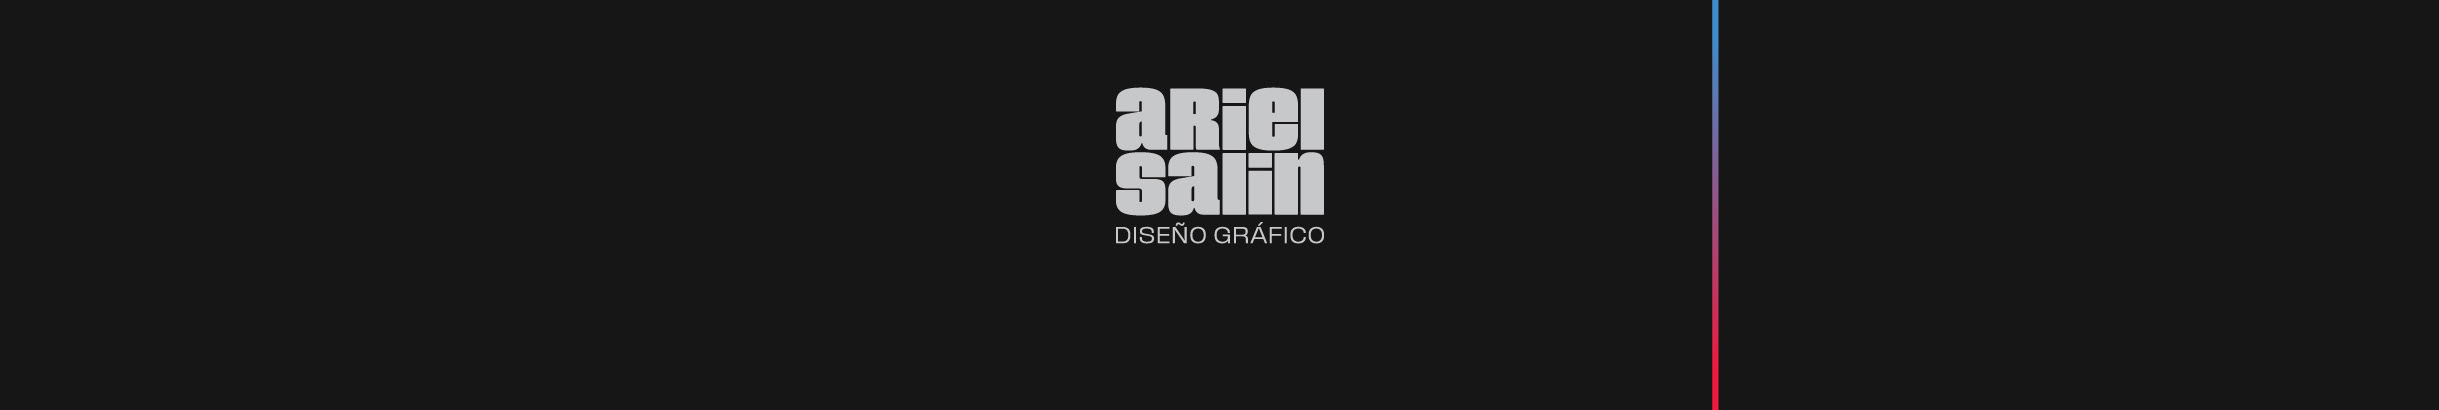 Banner profilu uživatele Ariel Salin